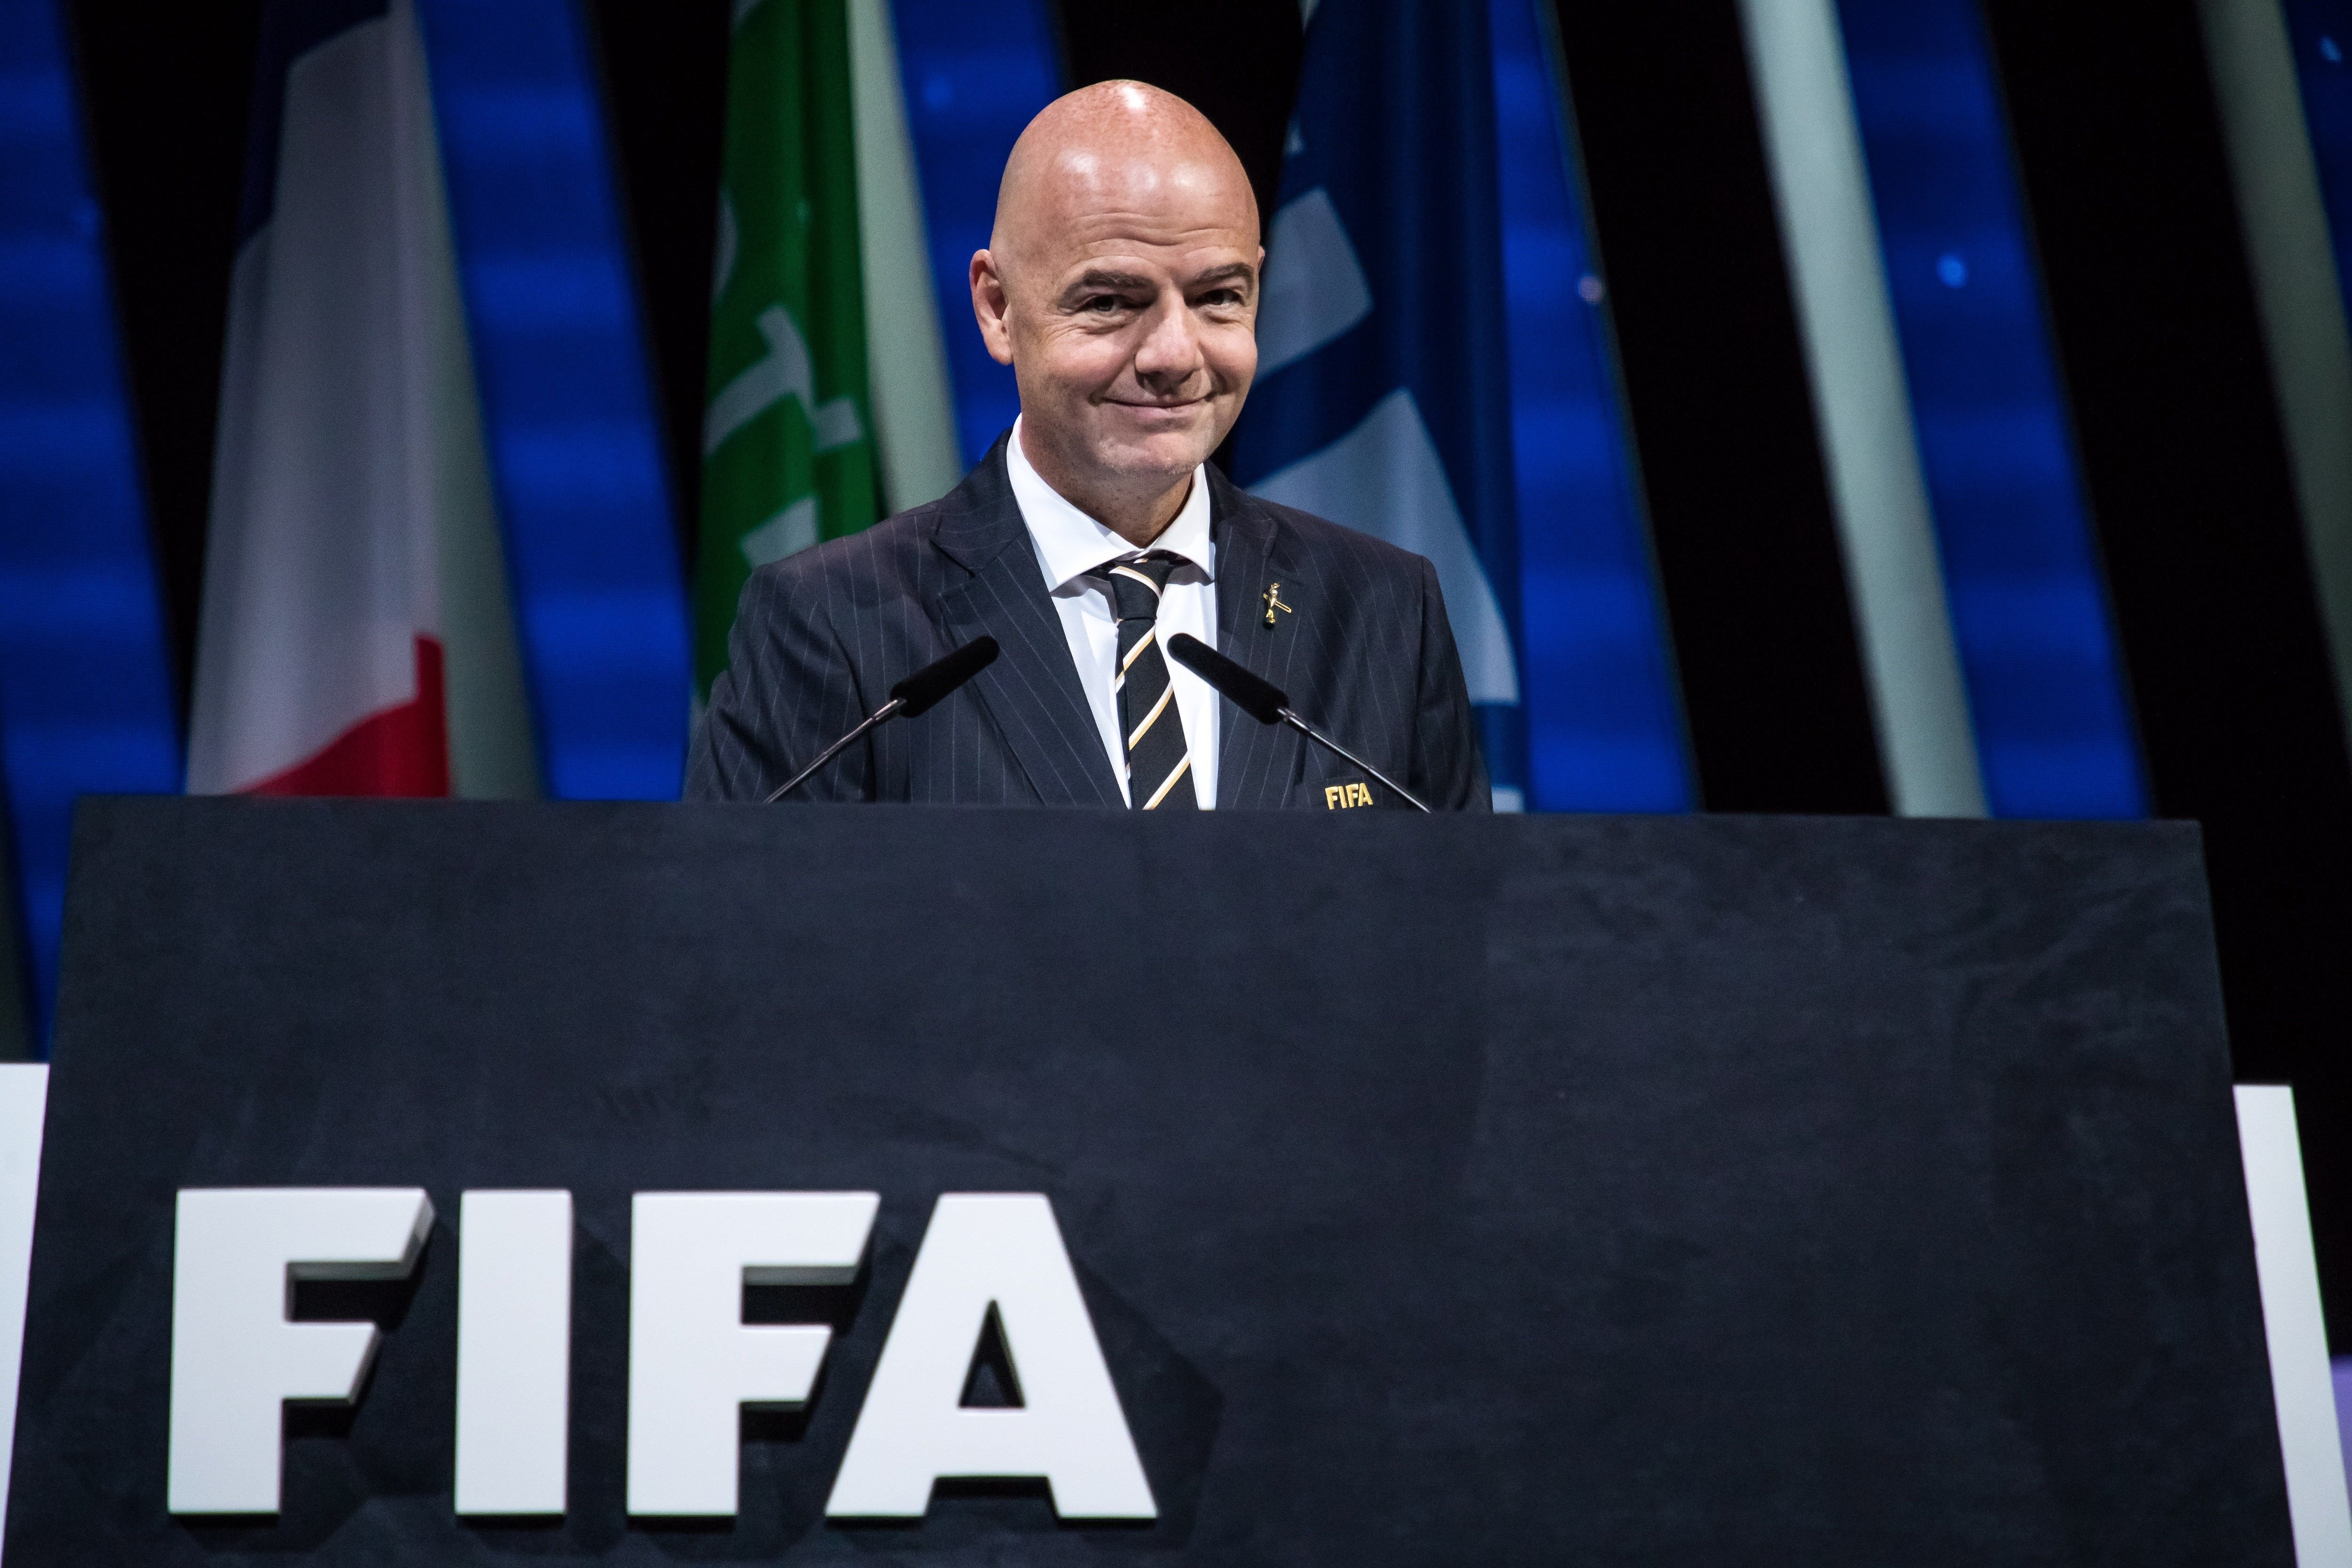 La FIFA renova el mandat de Gianni Infantino com a president